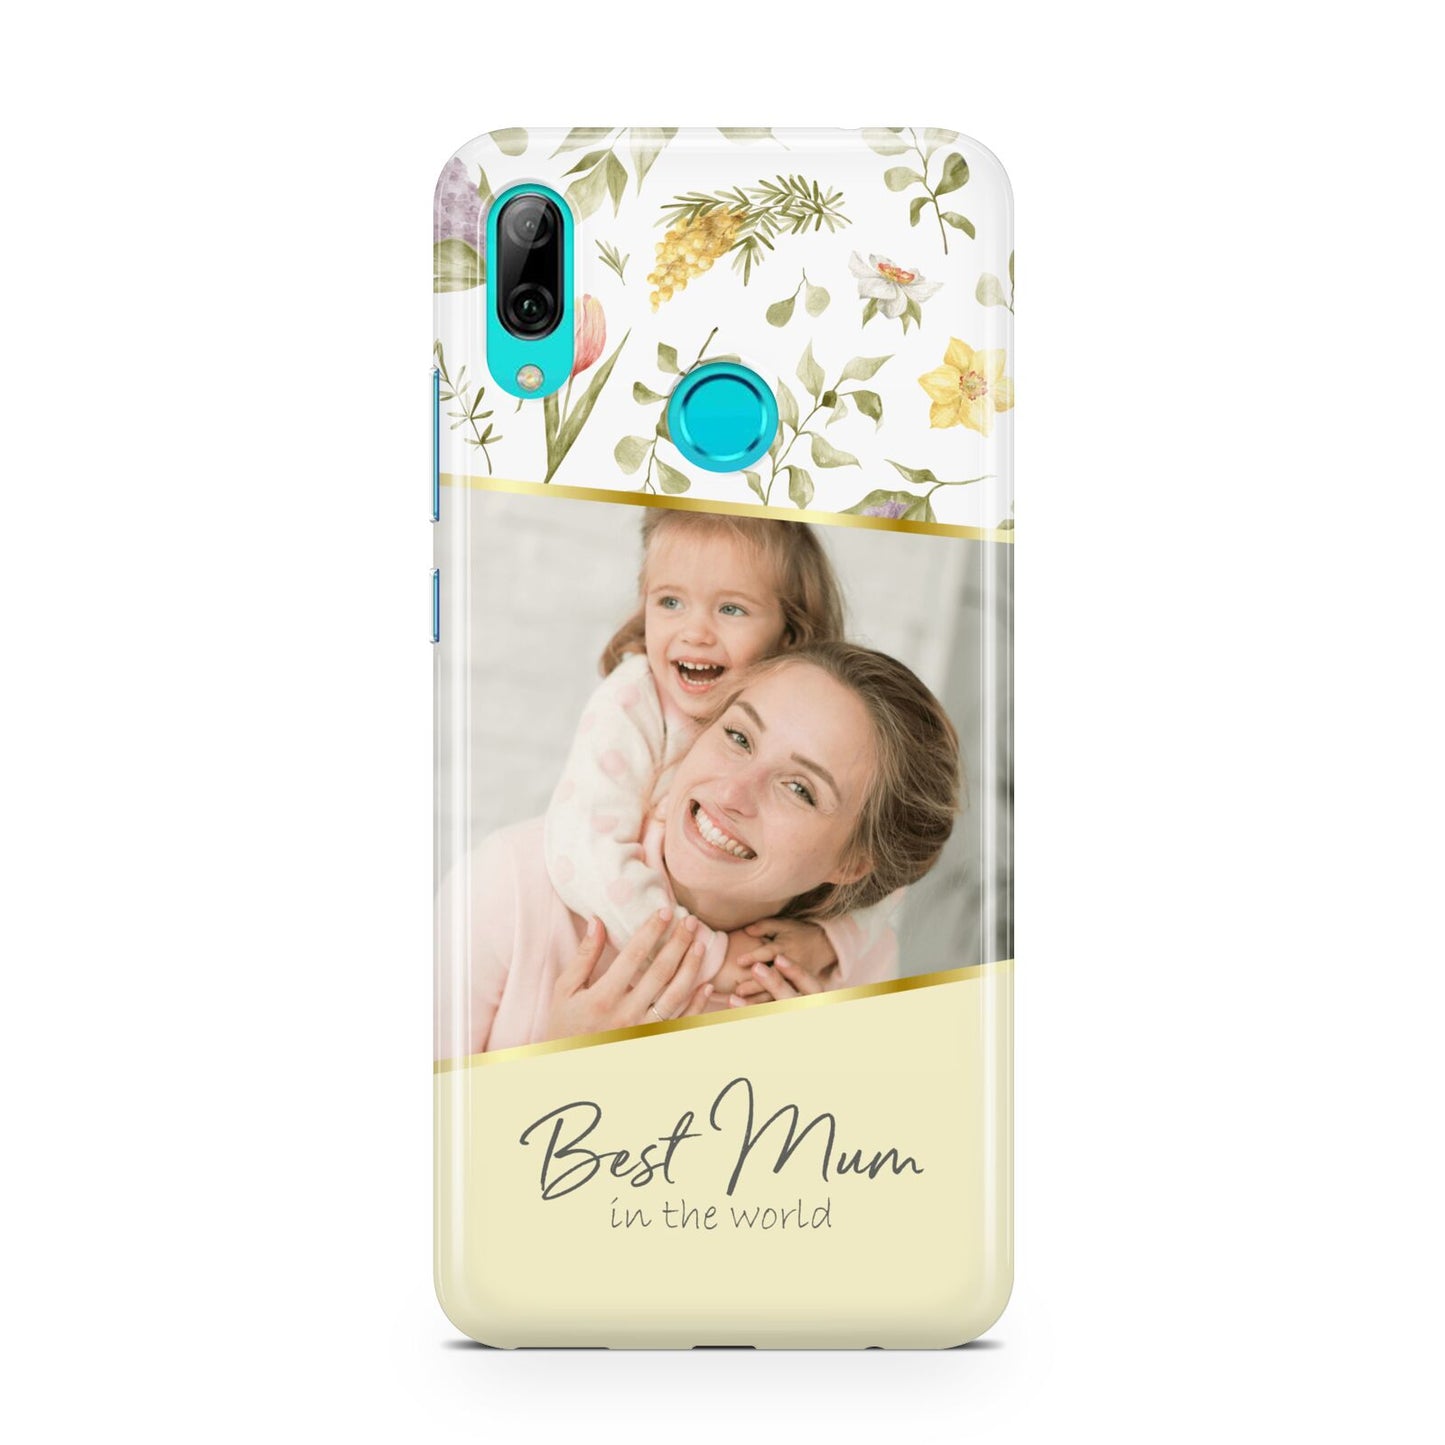 Personalised Best Mum Huawei P Smart 2019 Case